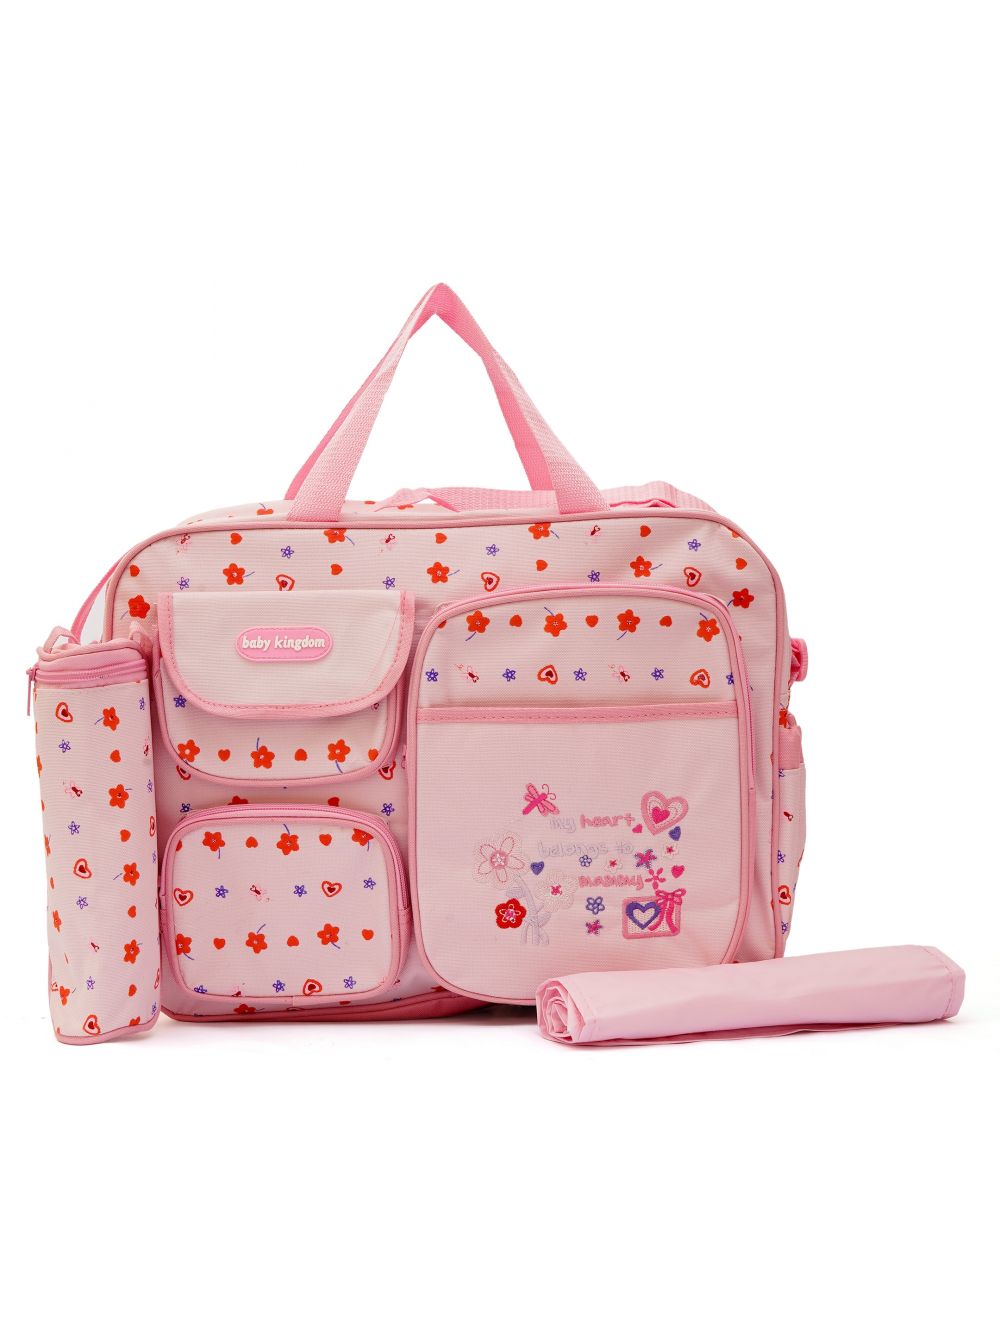 Little Sparks Diaper Bag Baby Kingdom Pink